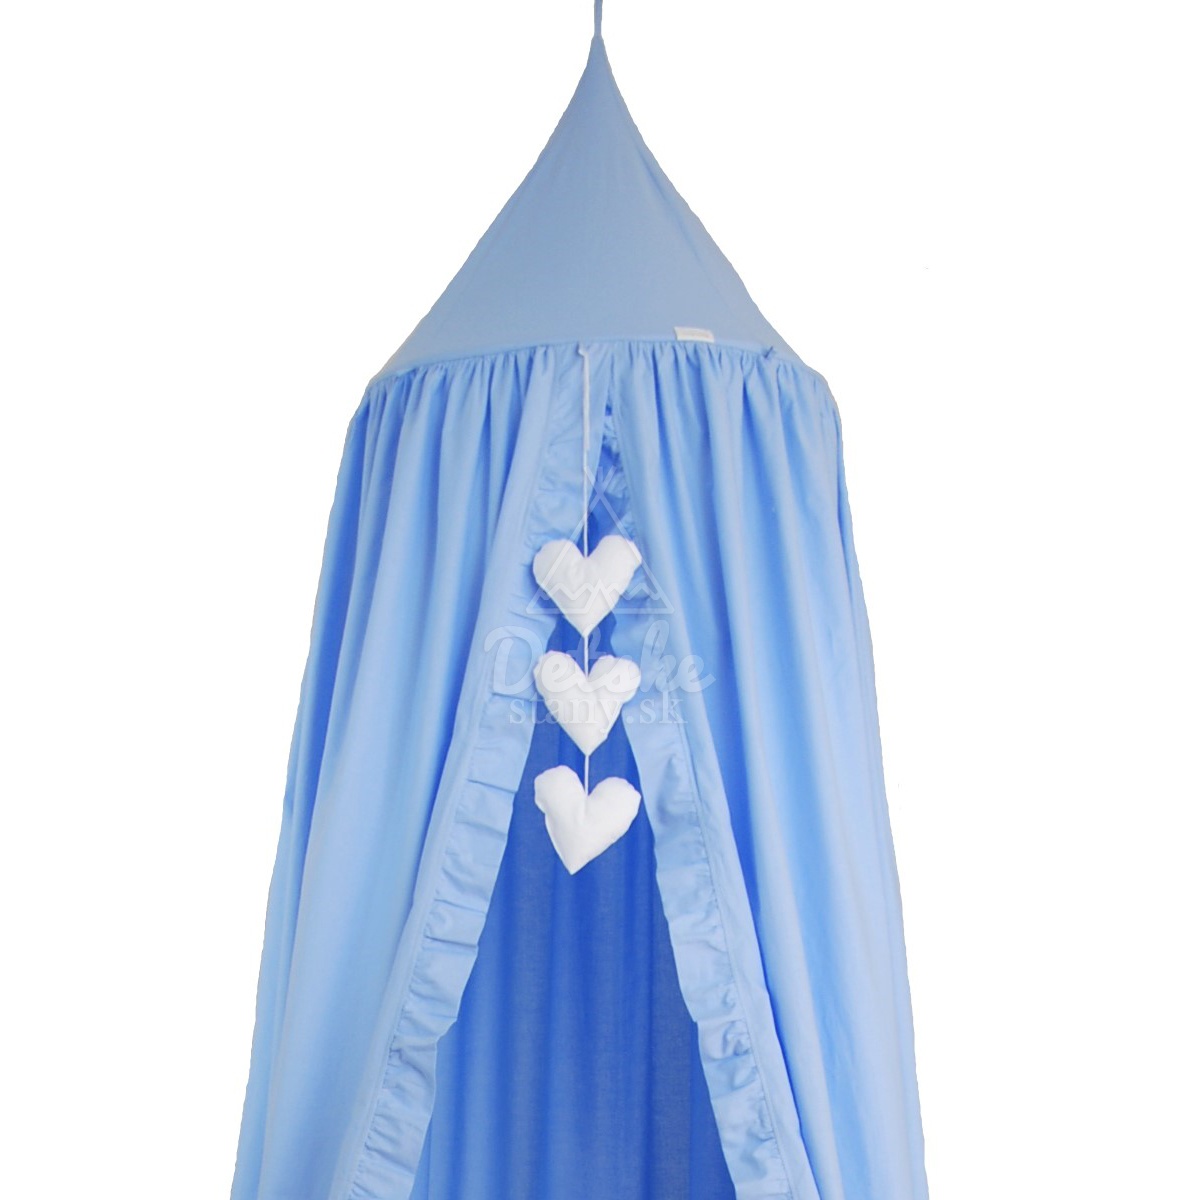 Bavlnený baldachýn s volánmi / závesný stan (275 cm) - modrý